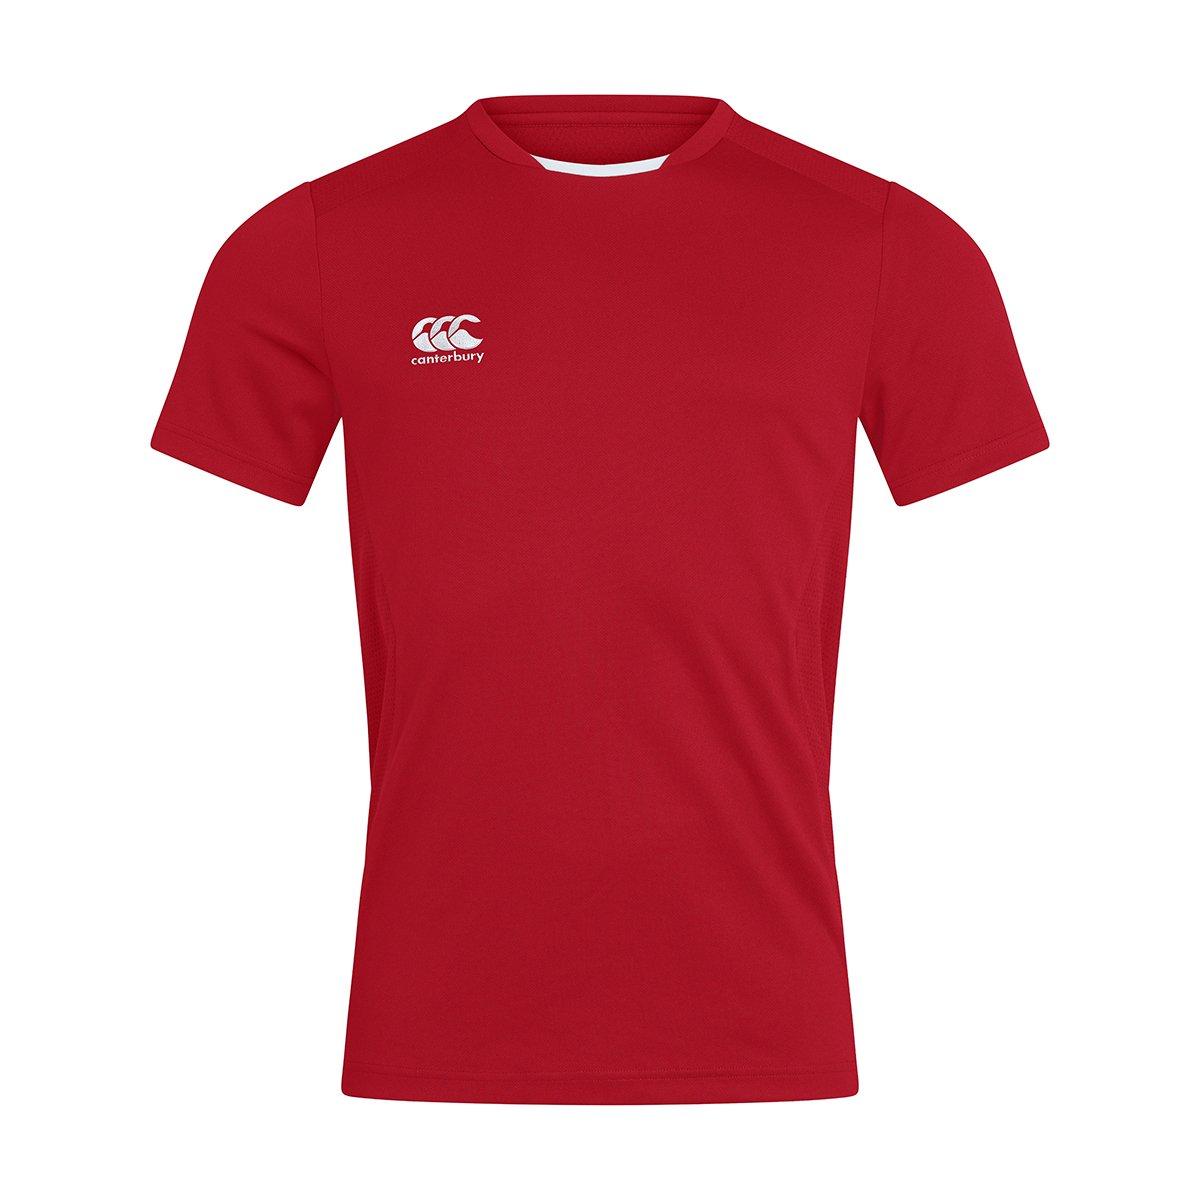 Club Dry Tshirt Herren Rot Bunt L von Canterbury